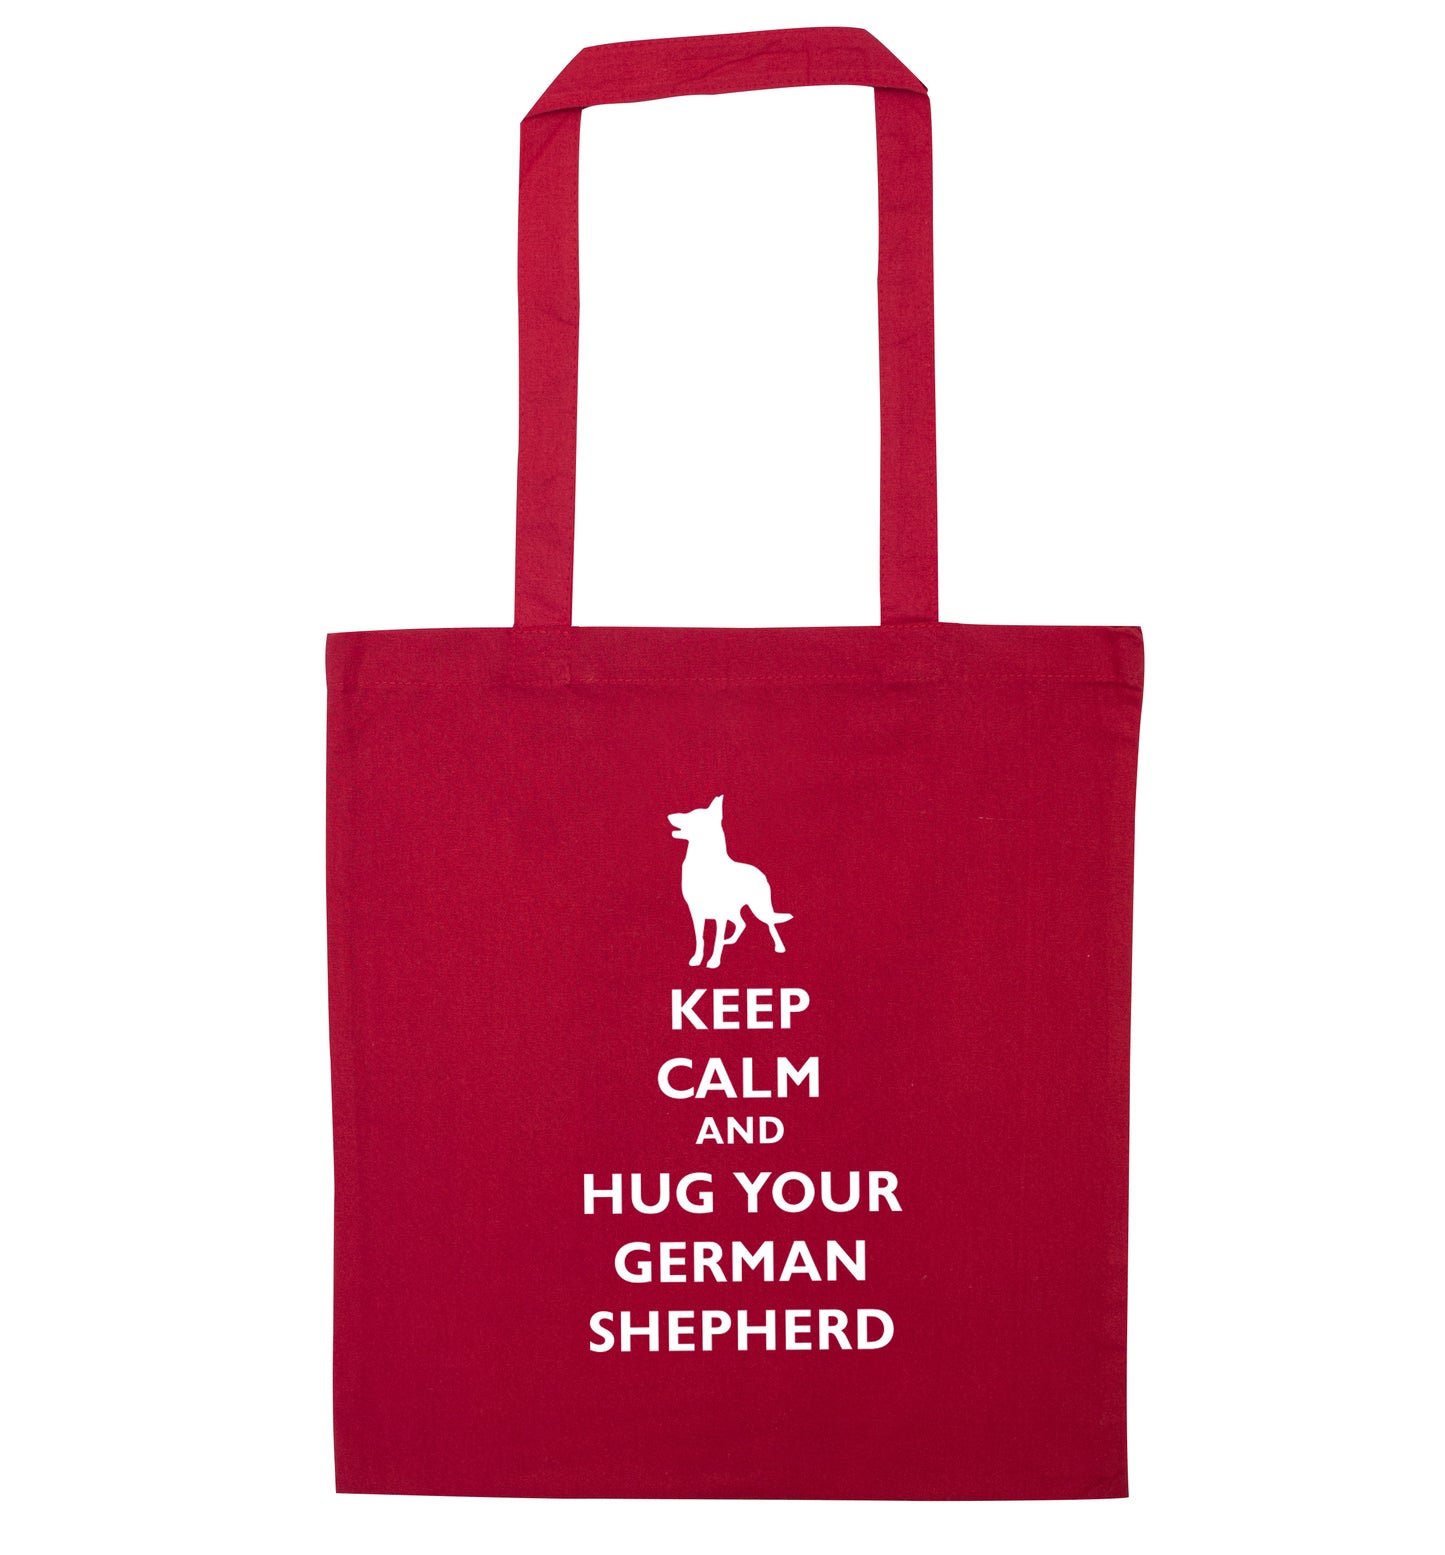 Keep calm and hug your german shepherd red tote bag